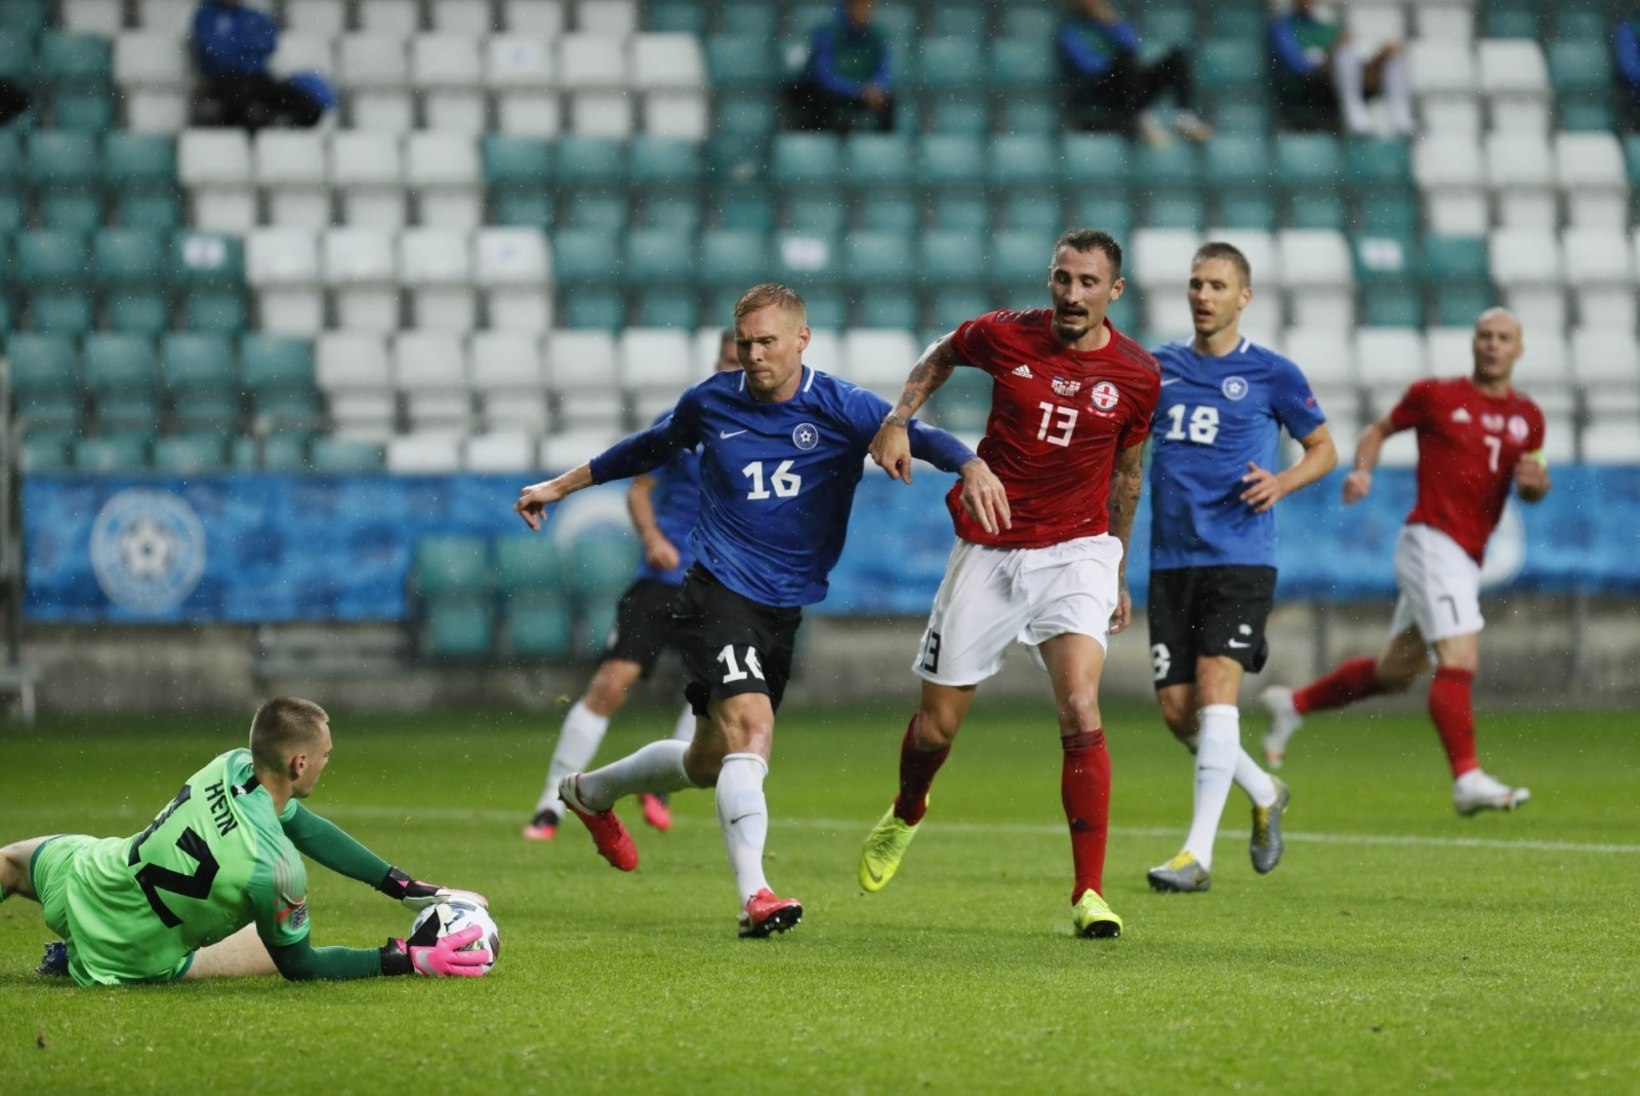 7 VÕTIT | Eesti vutikoondis jäi üheksandat mängu järjest võiduta. Vassiljev: Eesti liiga meestega on raske taset tõsta